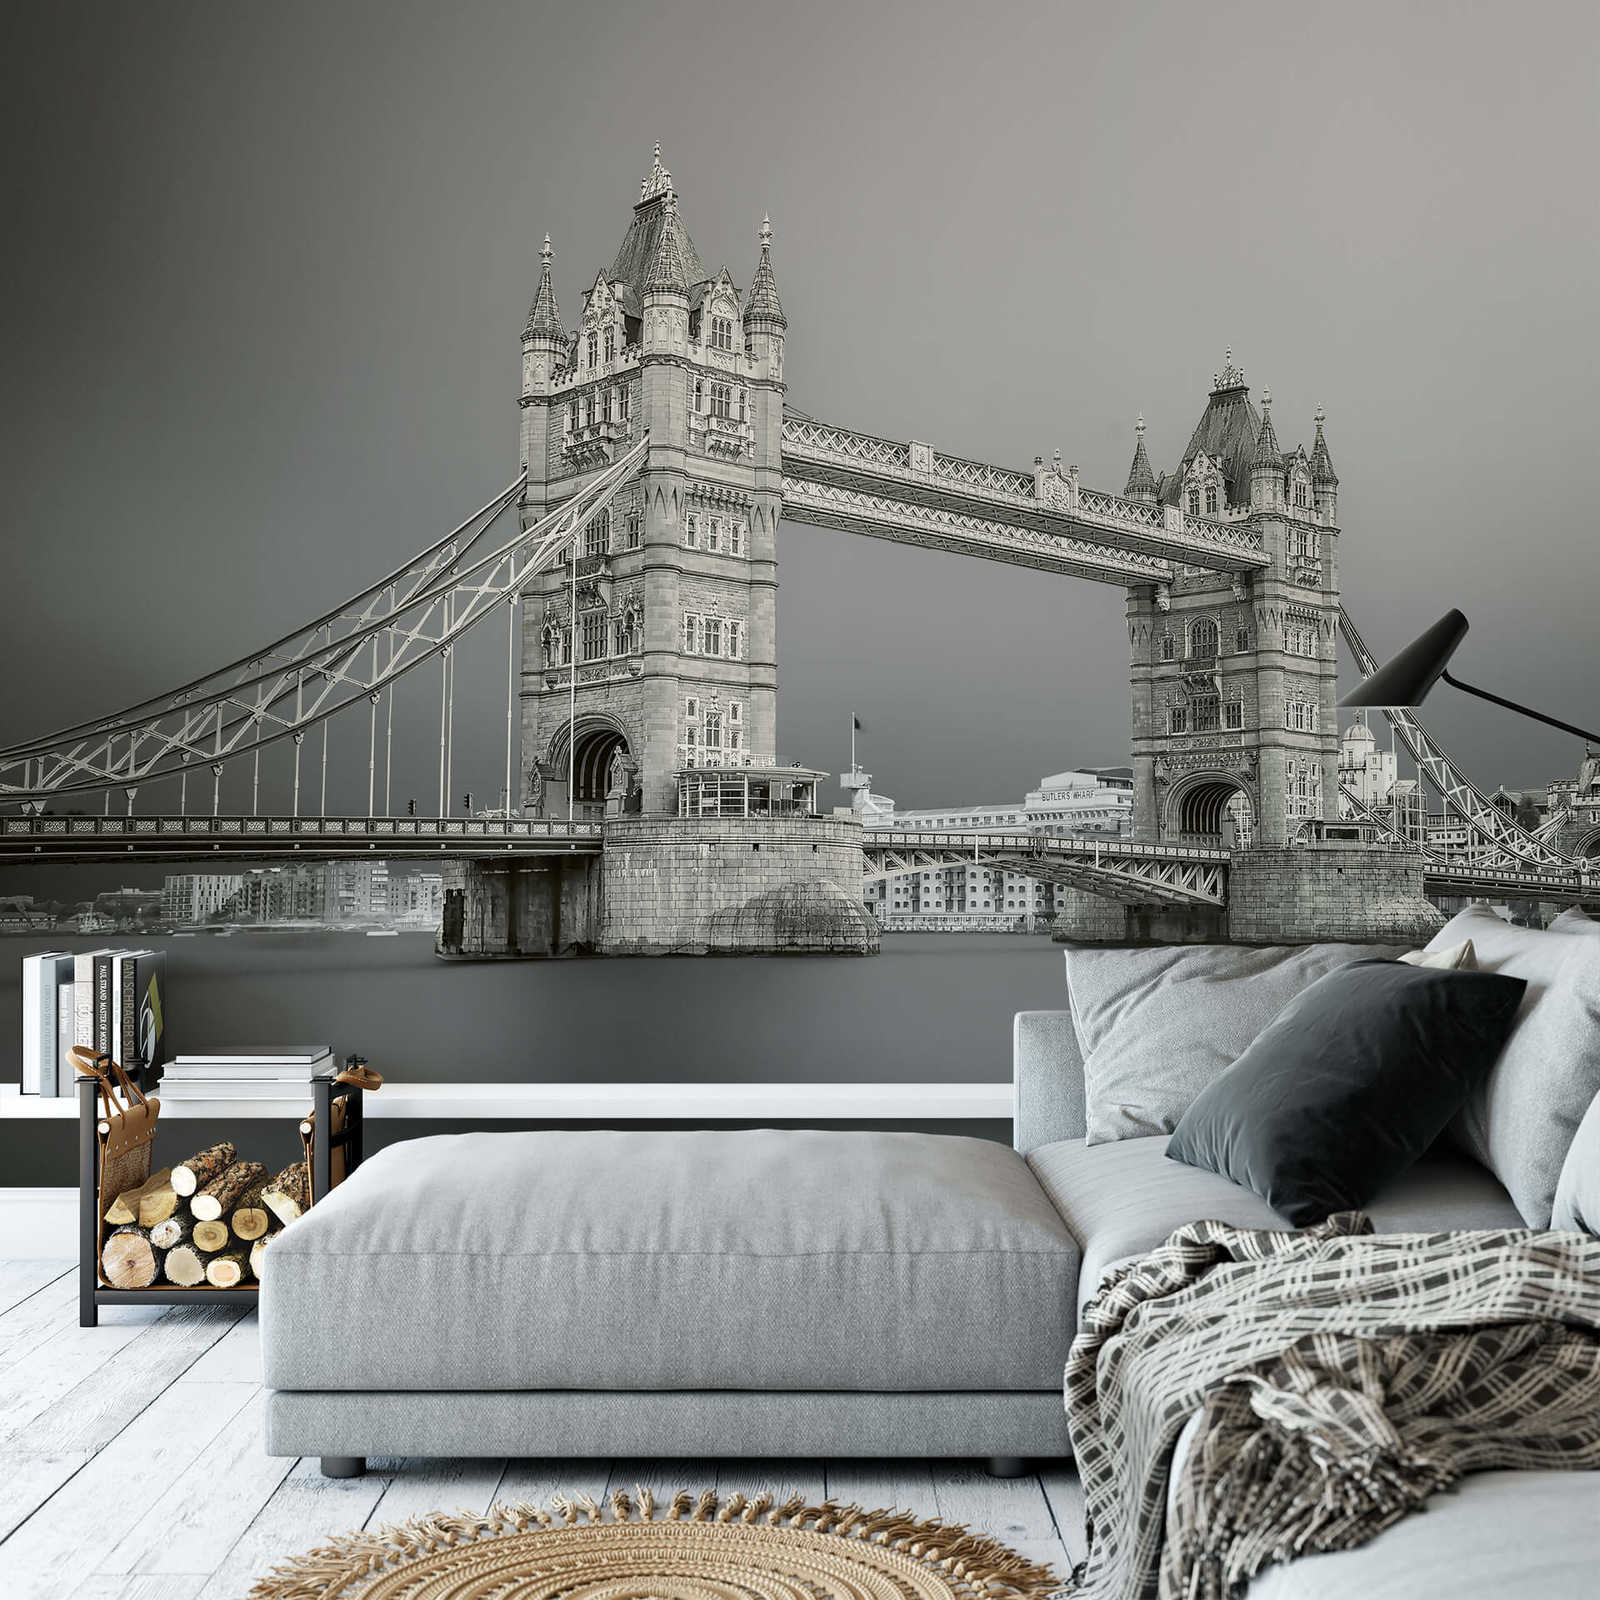             Tower Bridge London Behang - Grijs, Wit, Zwart
        